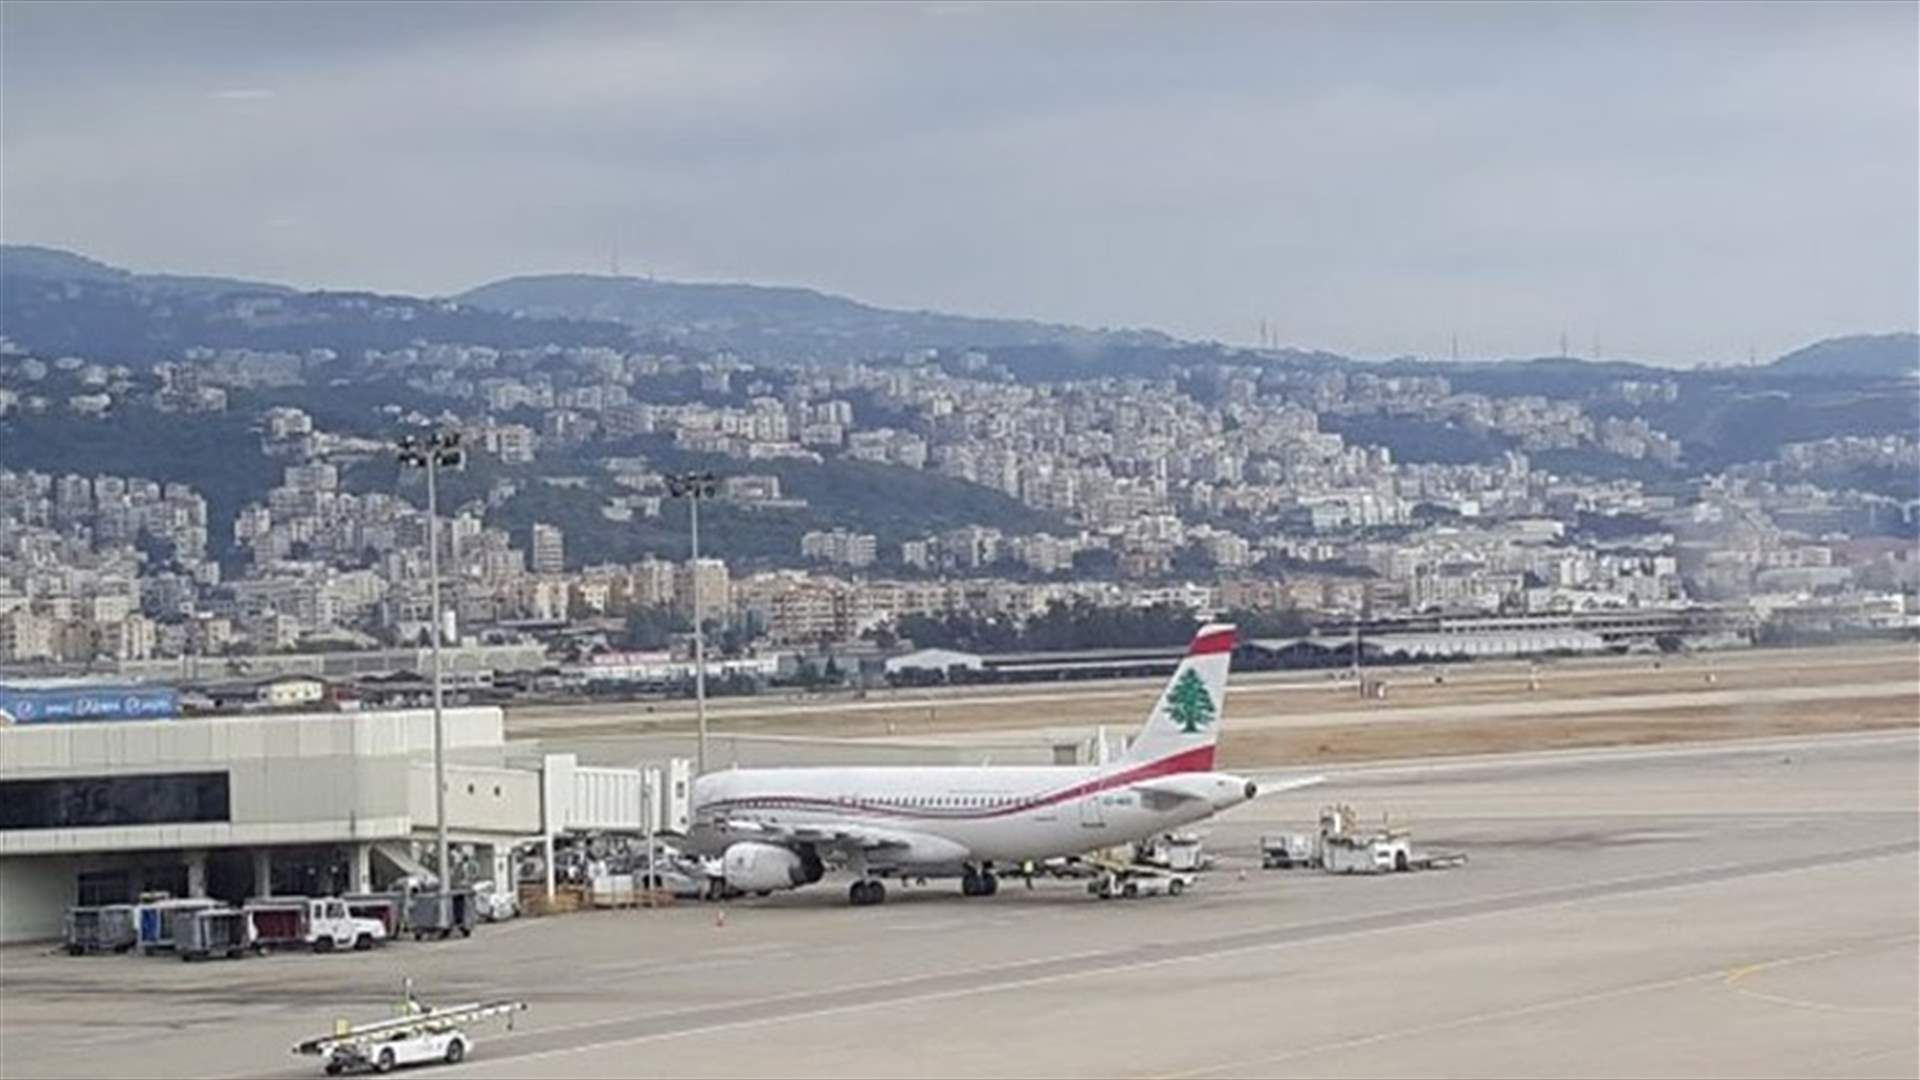 لمن تعود الطائرة الخاصة التي حاولت الاقلاع من دون اذن في مطار بيروت ؟